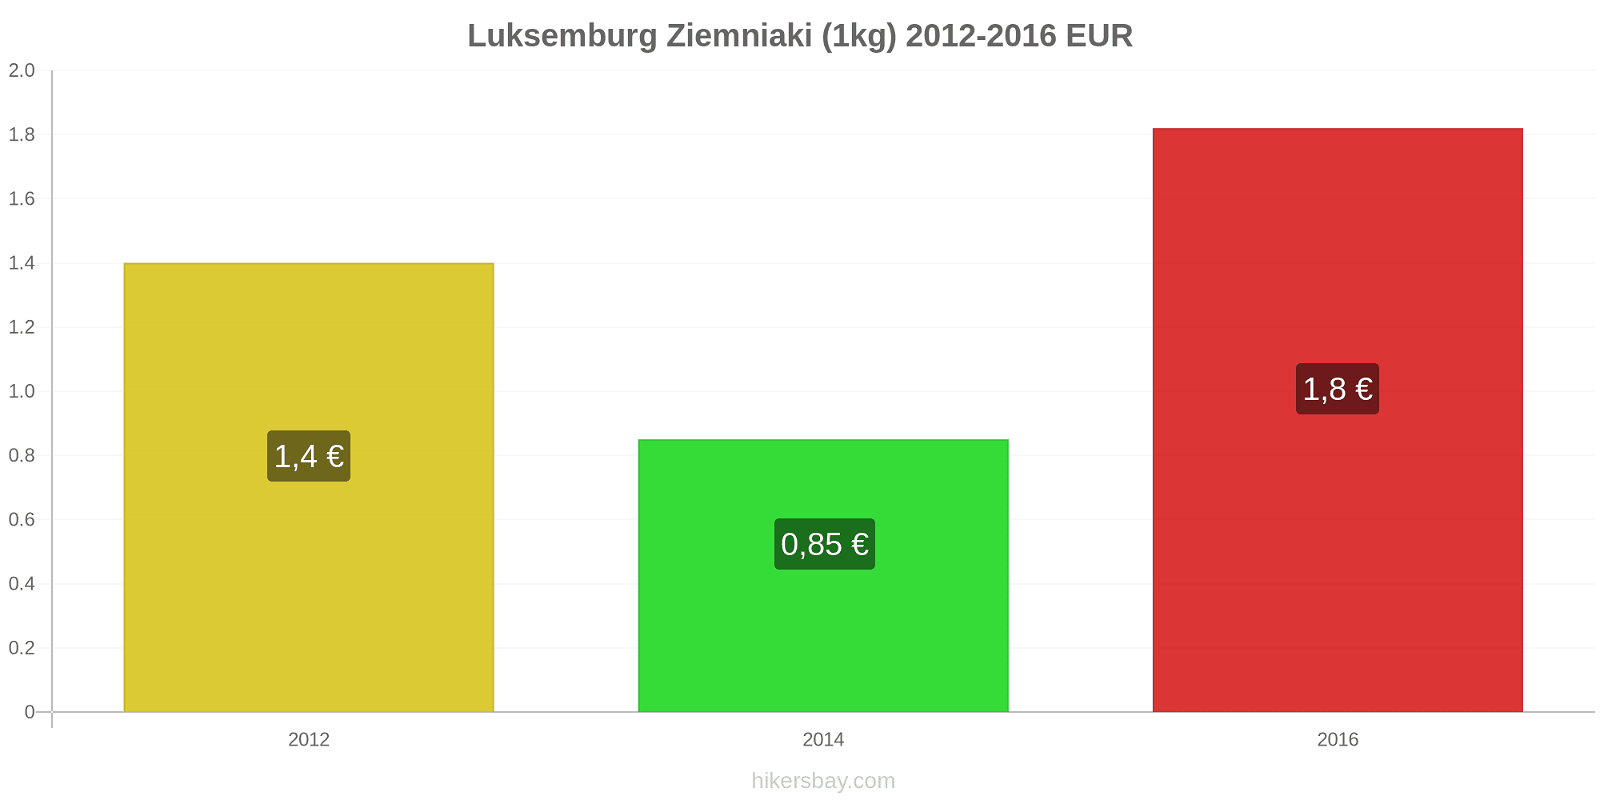 Luksemburg zmiany cen Ziemniaki (1kg) hikersbay.com